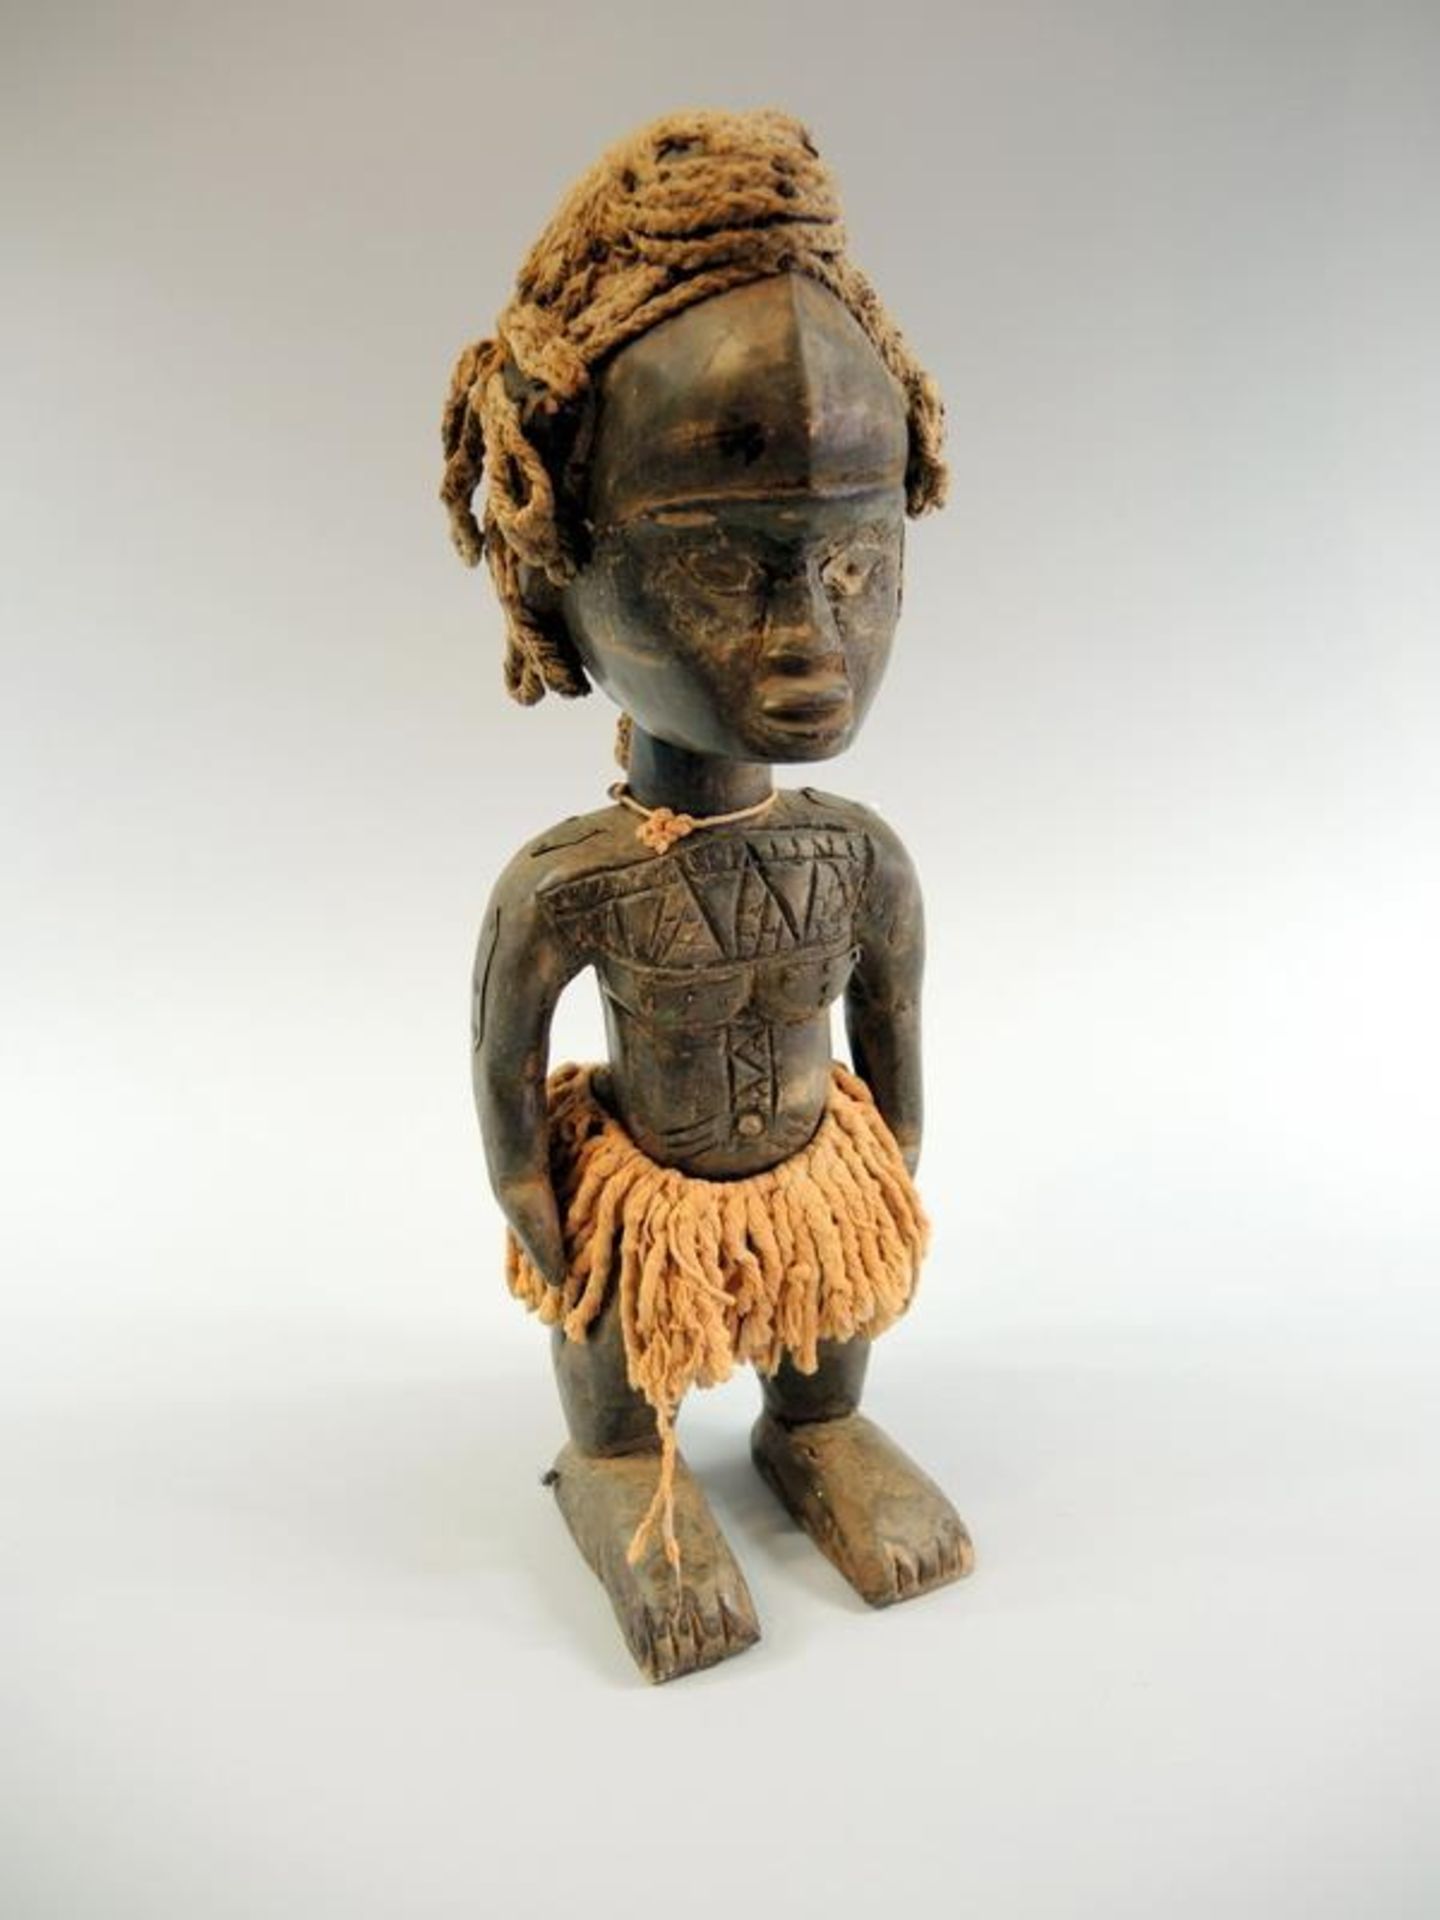 Figur mit Kaurimuschelkette Holz geschnitzt, Metallbeschläge, Naturfasern und Kaurimuschelkette.